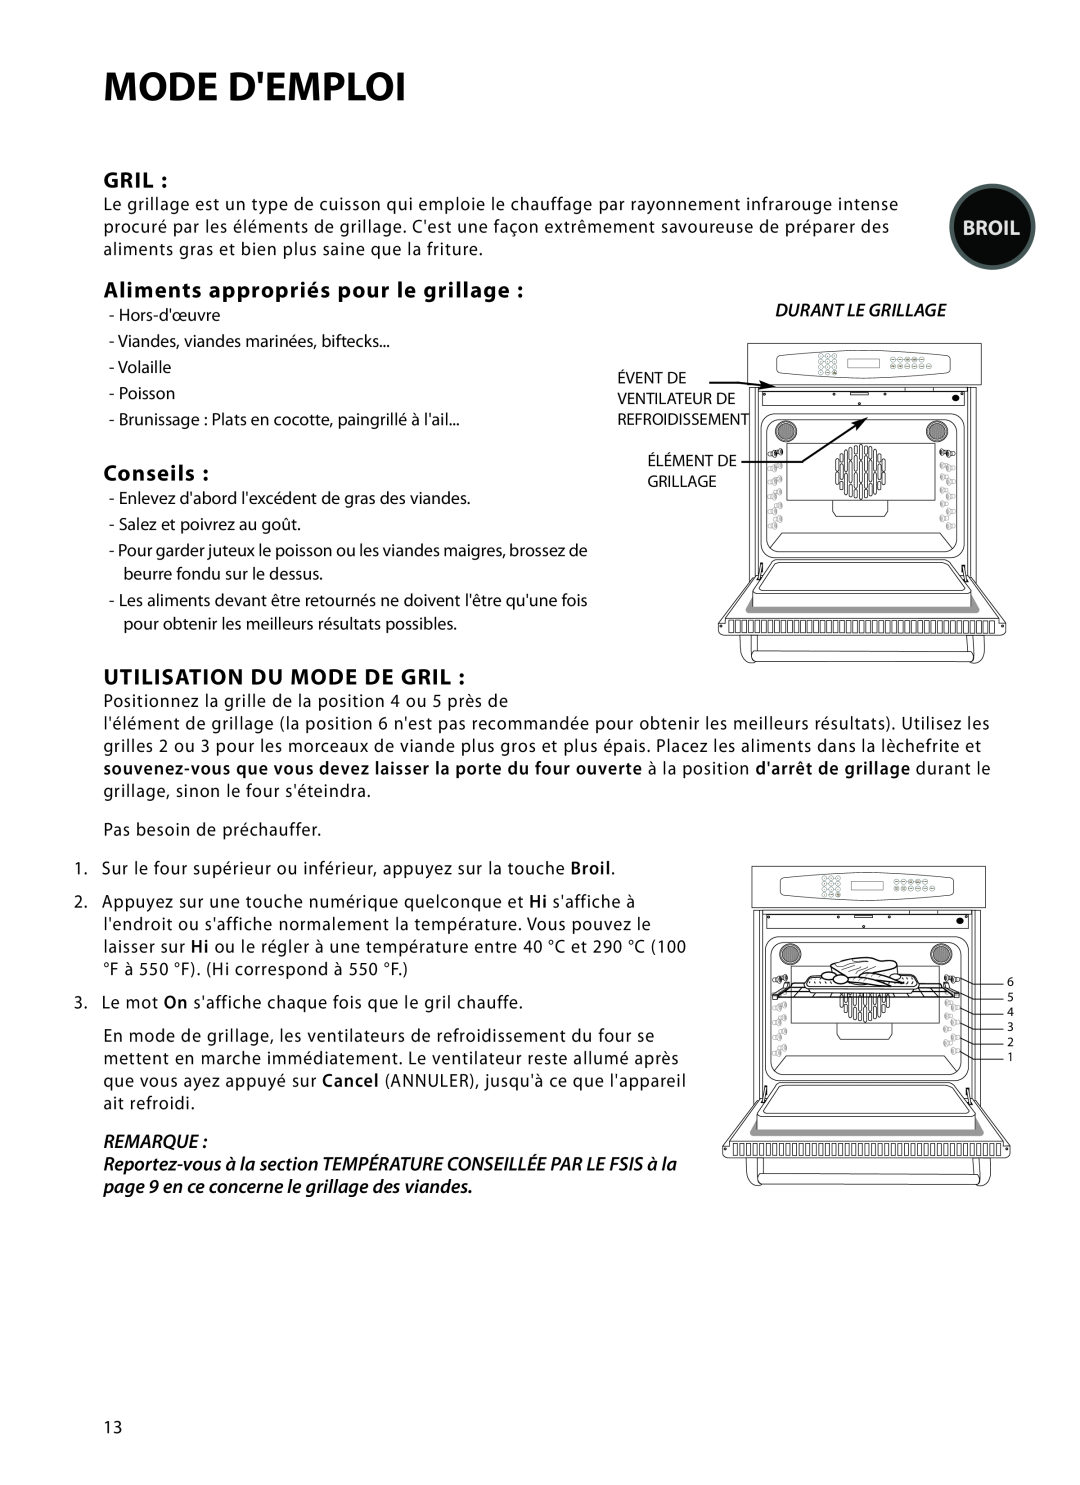 DCS WOT-127 manual Aliments appropriés pour le grillage, Conseils, Utilisation Du Mode De Gril, Mode Demploi, Remarque 